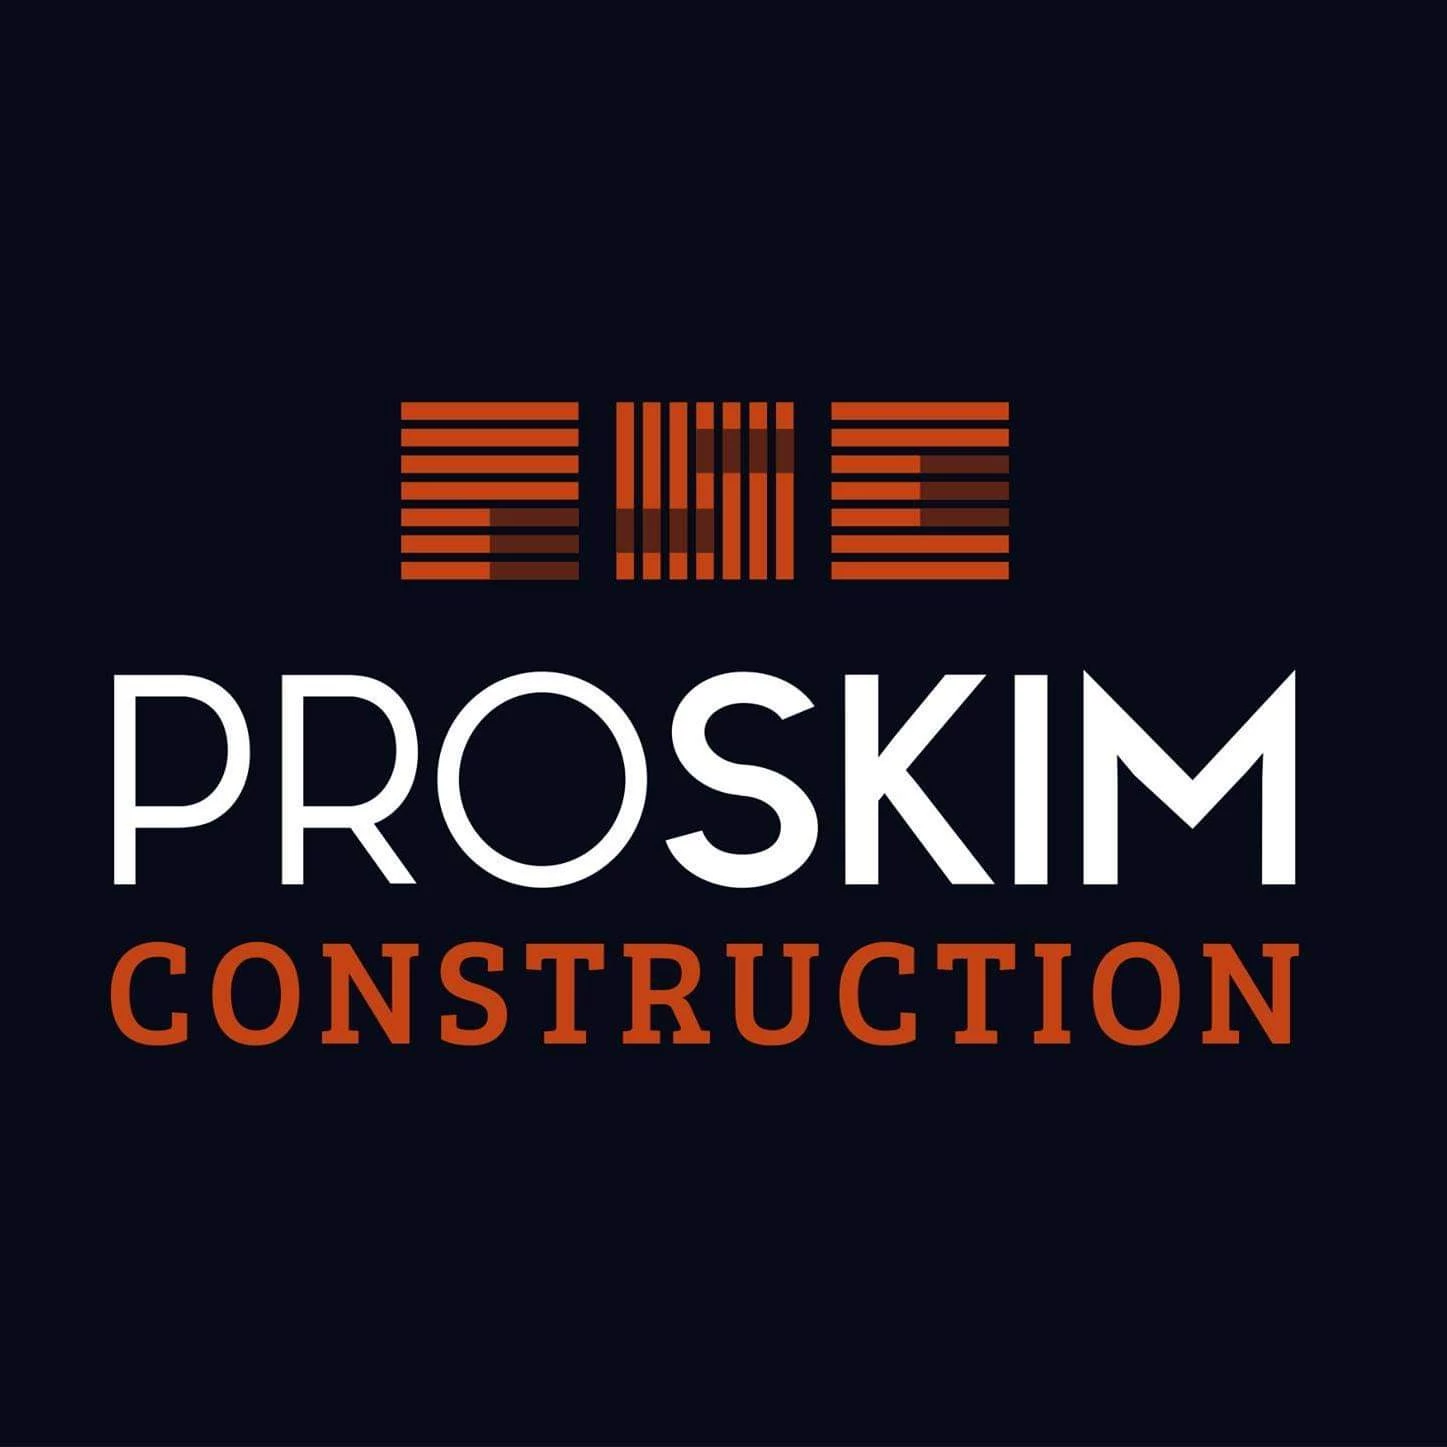 Proskim Construction (PSC)